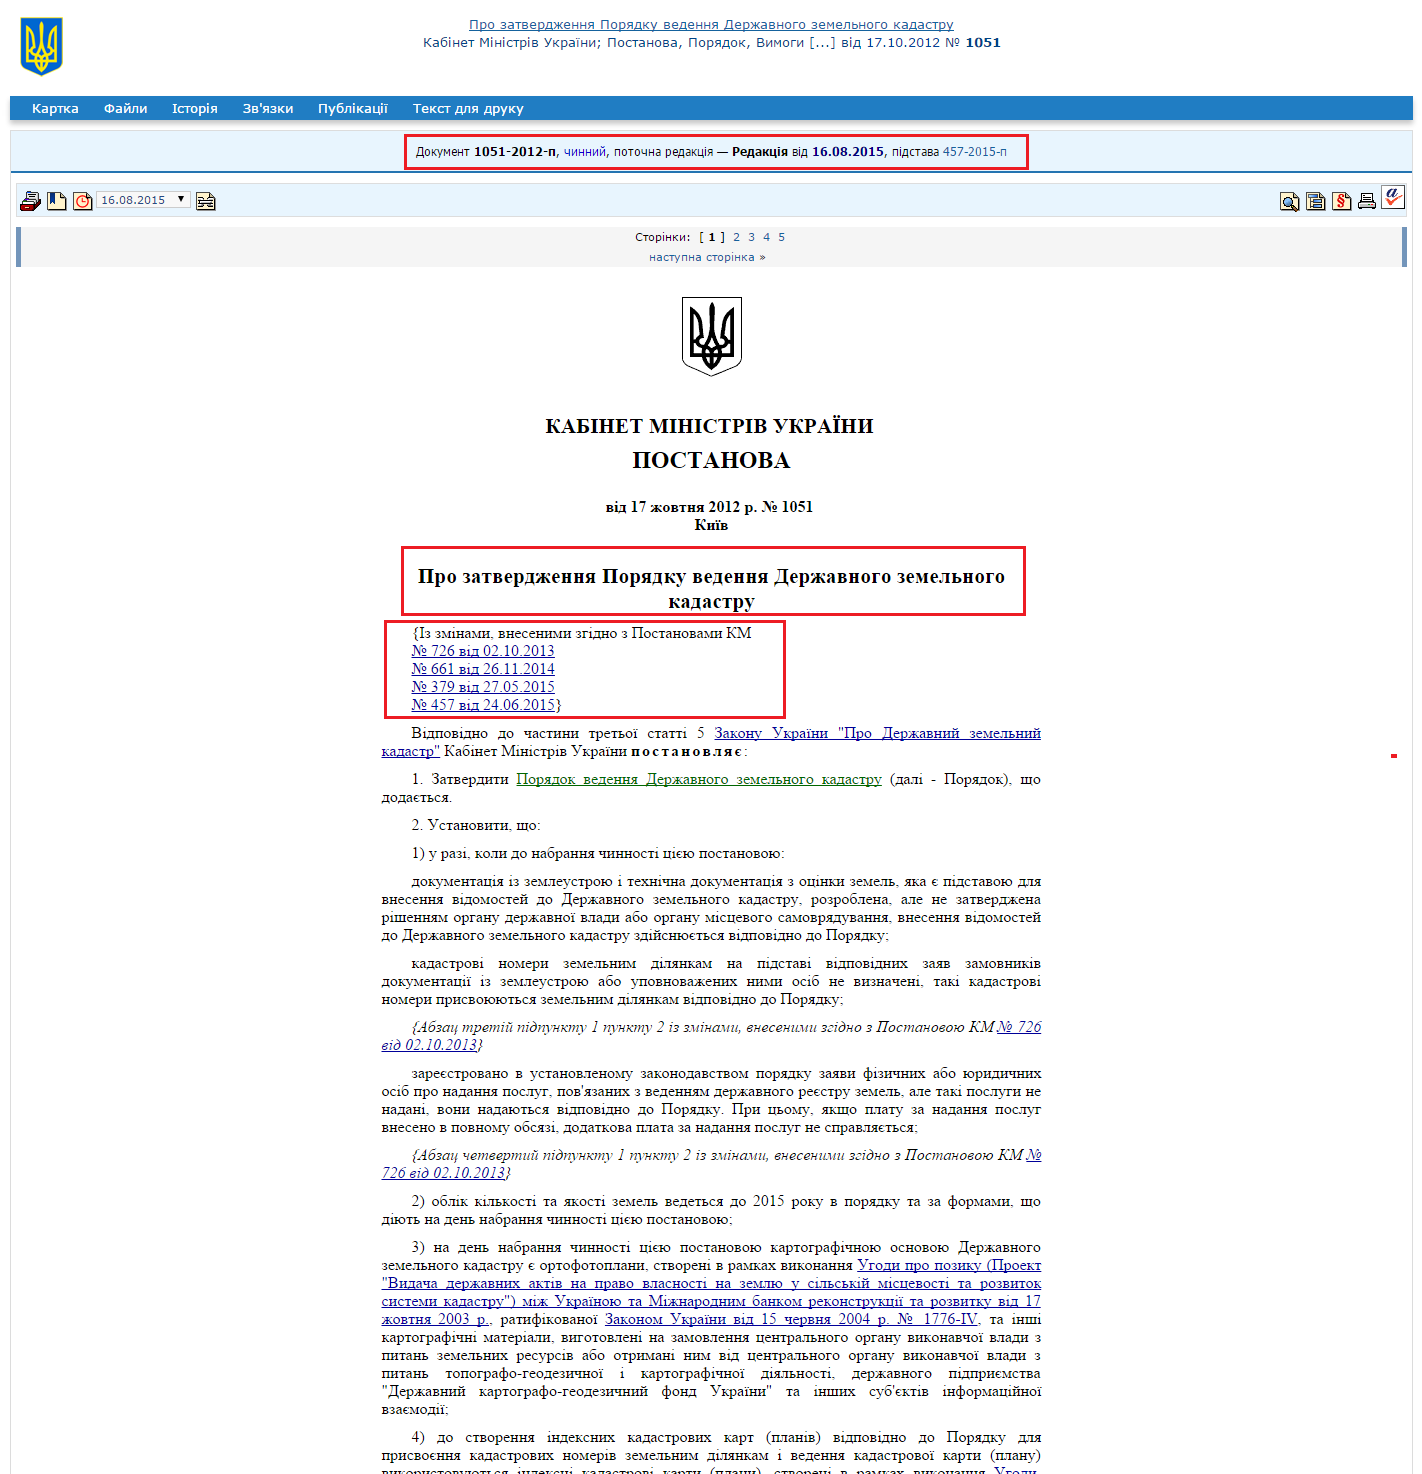 http://zakon1.rada.gov.ua/laws/show/1051-2012-%D0%BF